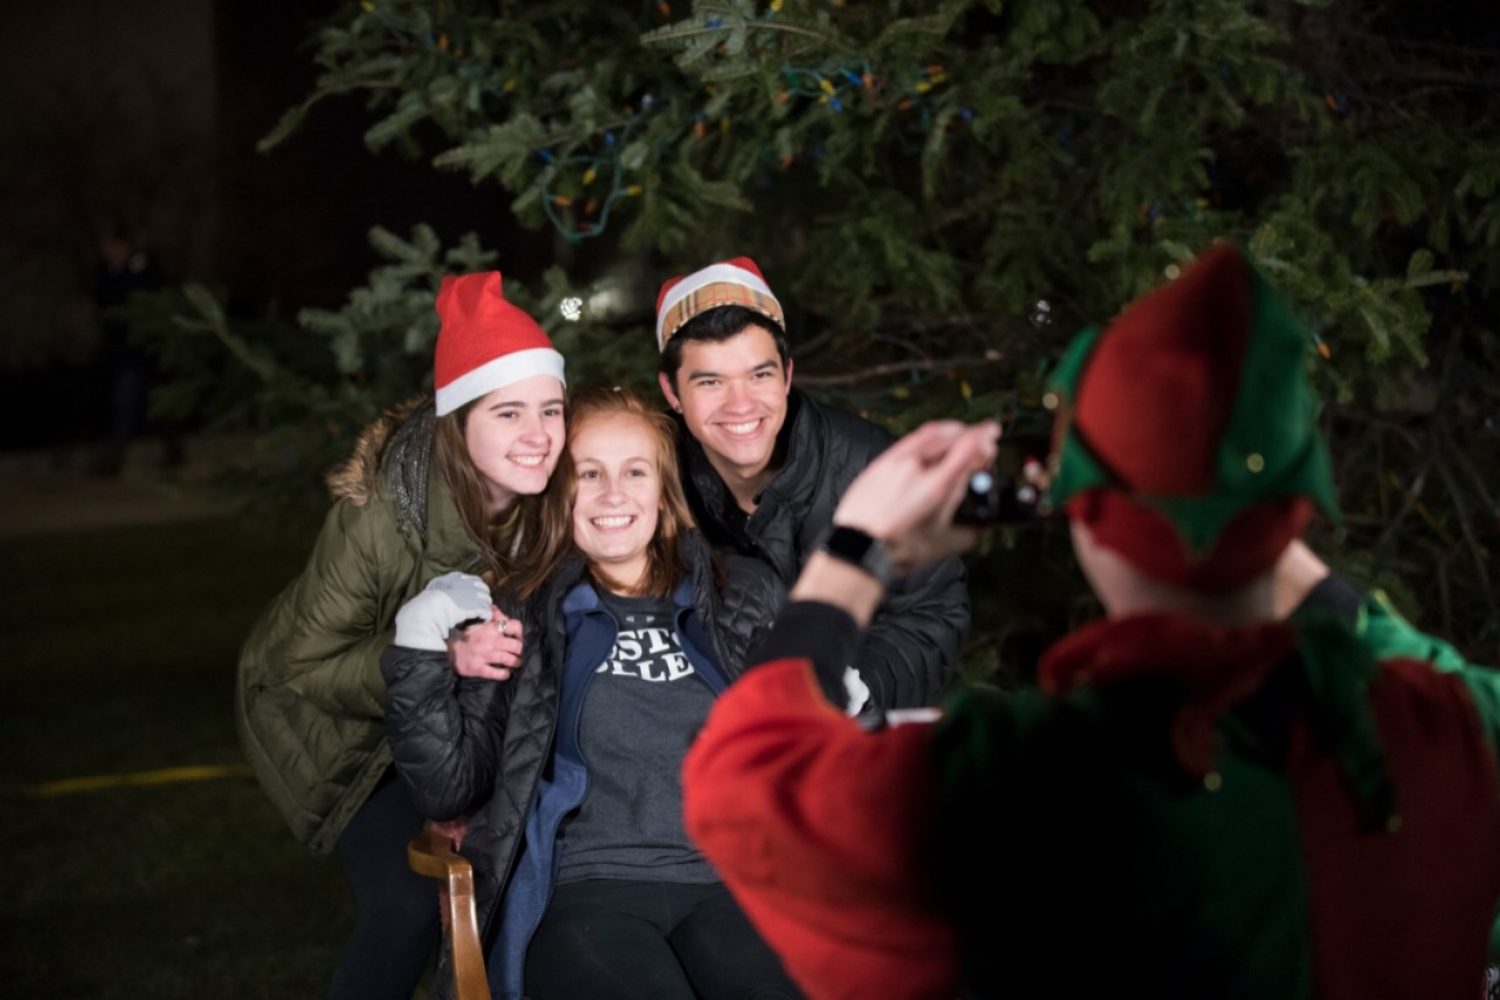 Photos with Santa's elves